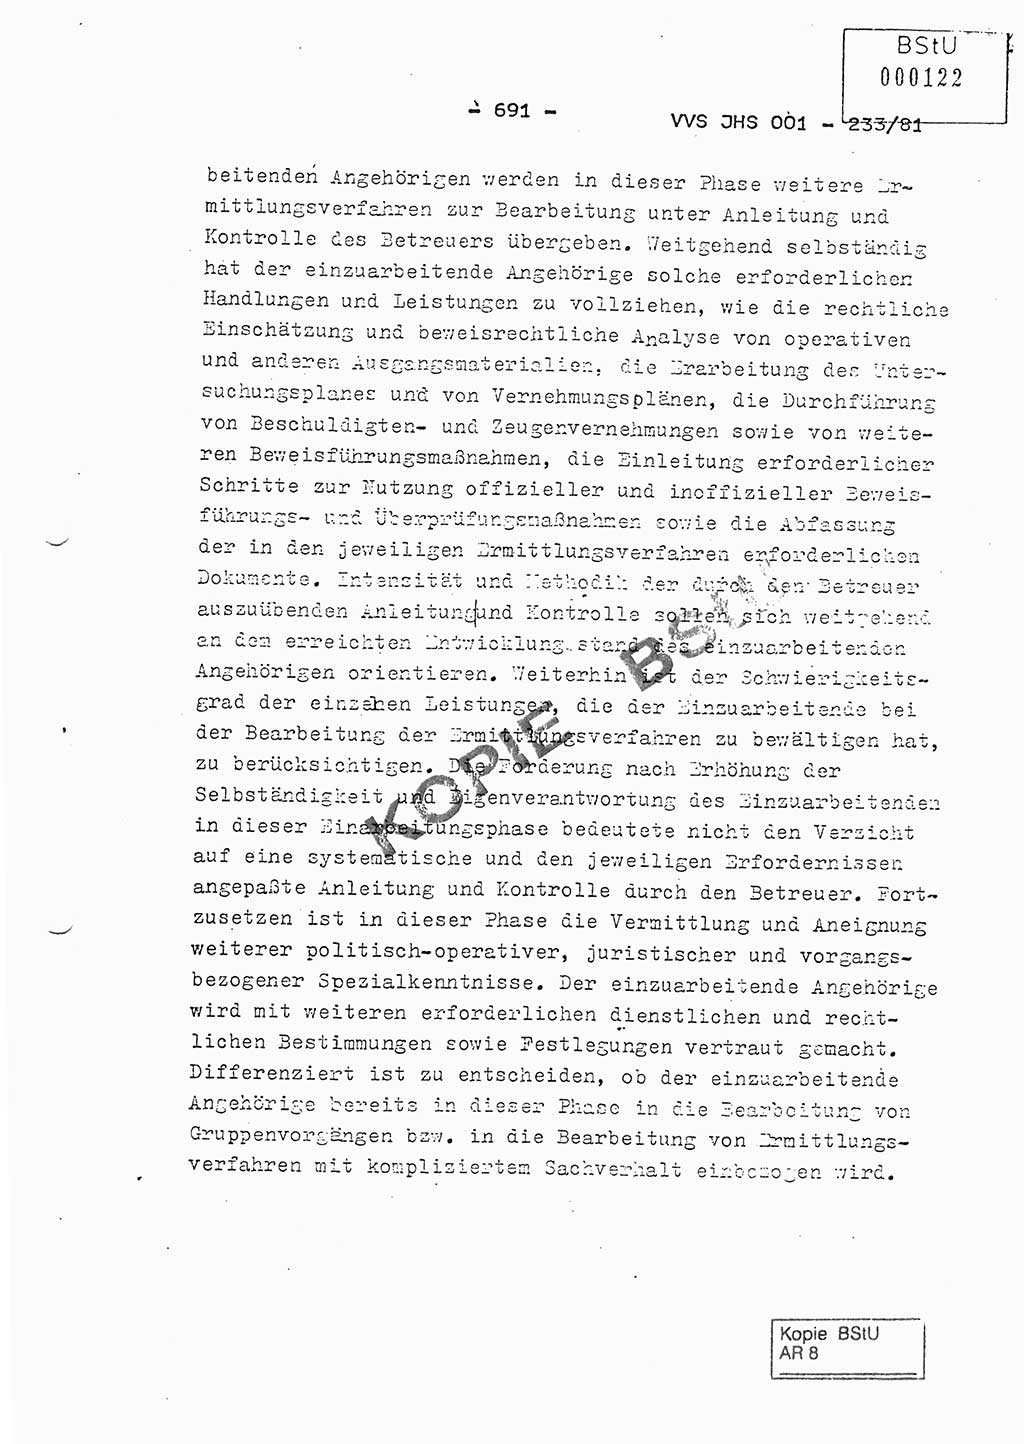 Dissertation Oberstleutnant Horst Zank (JHS), Oberstleutnant Dr. Karl-Heinz Knoblauch (JHS), Oberstleutnant Gustav-Adolf Kowalewski (HA Ⅸ), Oberstleutnant Wolfgang Plötner (HA Ⅸ), Ministerium für Staatssicherheit (MfS) [Deutsche Demokratische Republik (DDR)], Juristische Hochschule (JHS), Vertrauliche Verschlußsache (VVS) o001-233/81, Potsdam 1981, Blatt 691 (Diss. MfS DDR JHS VVS o001-233/81 1981, Bl. 691)